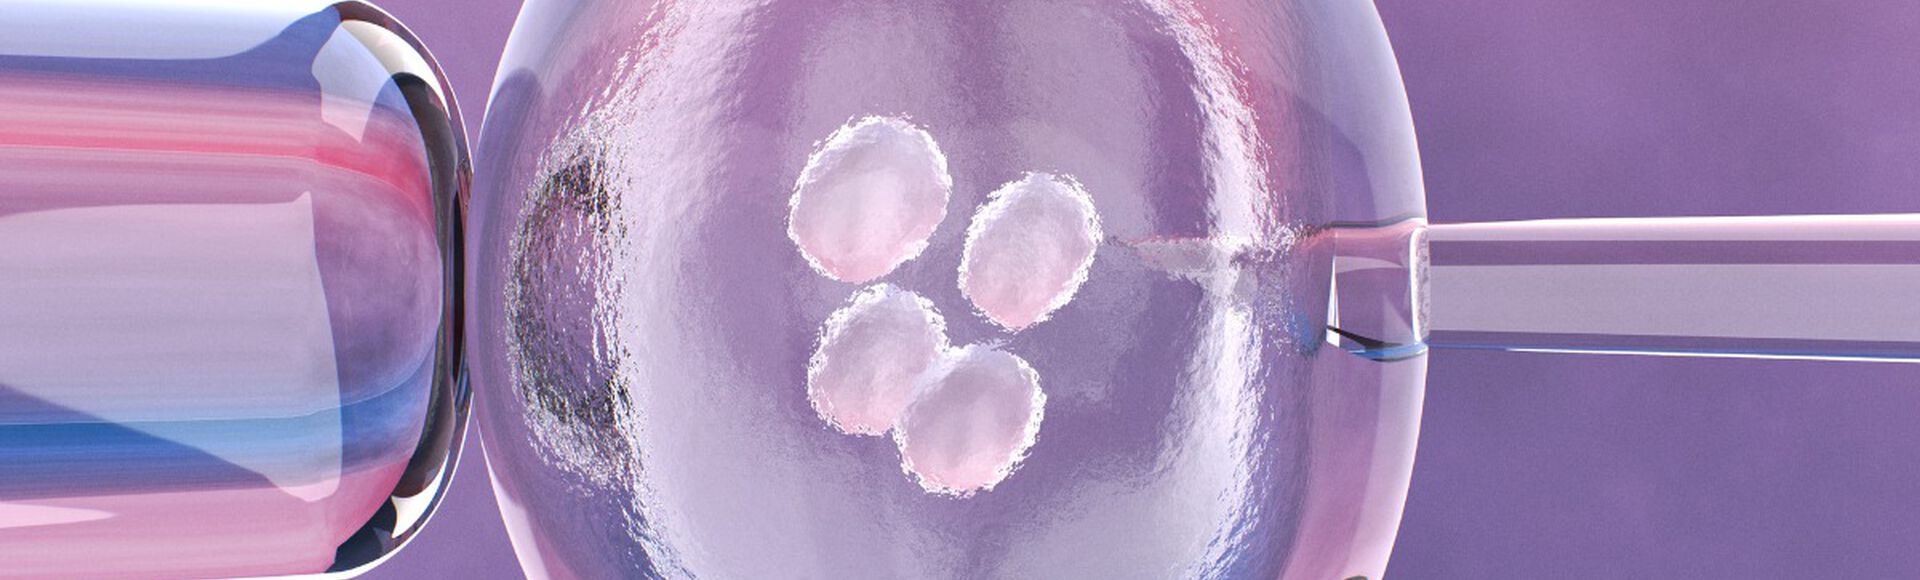 Ilustração de procedimento de fertilização in vitro